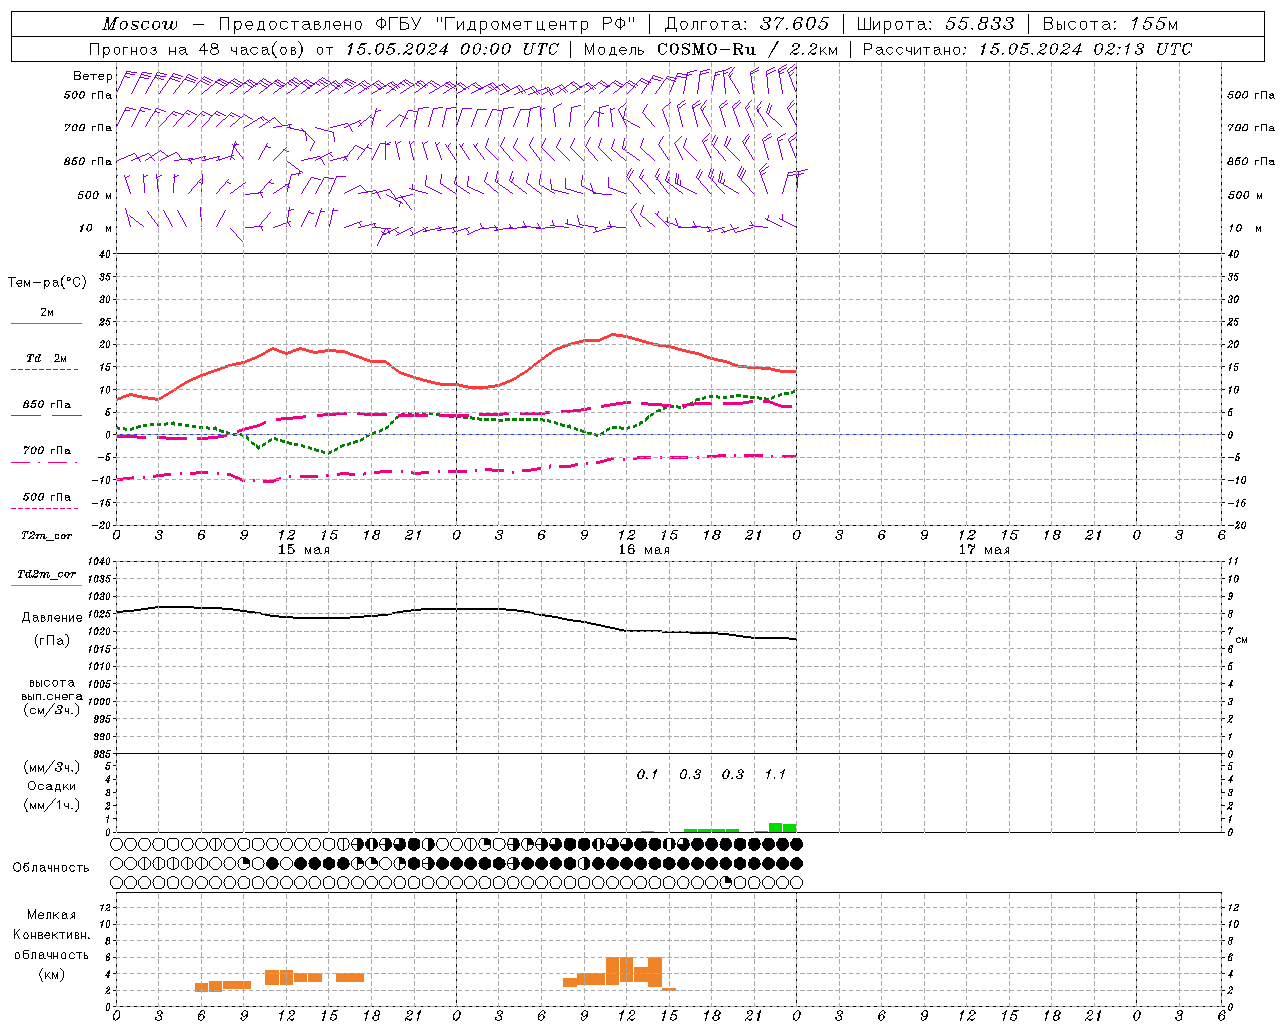 Прогнозы погоды по пунктам (метеограммы) модели COSMO